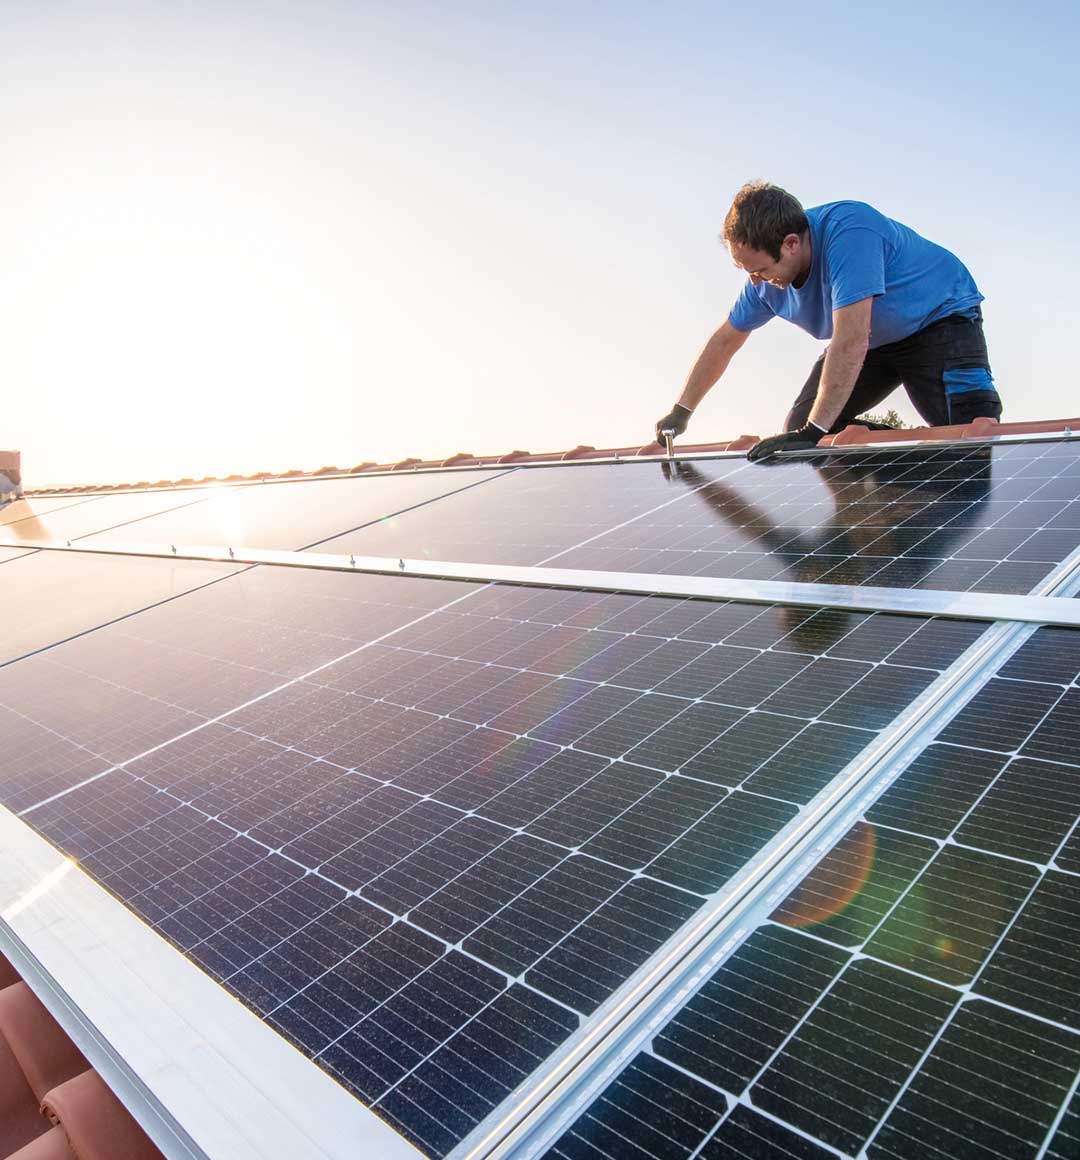 Photovoltaik-Thermografie: Ein Handwerker installiert Sonnenkollektoren auf dem Dach eines Hauses. © Eloi_Omella / E+ via Getty Images